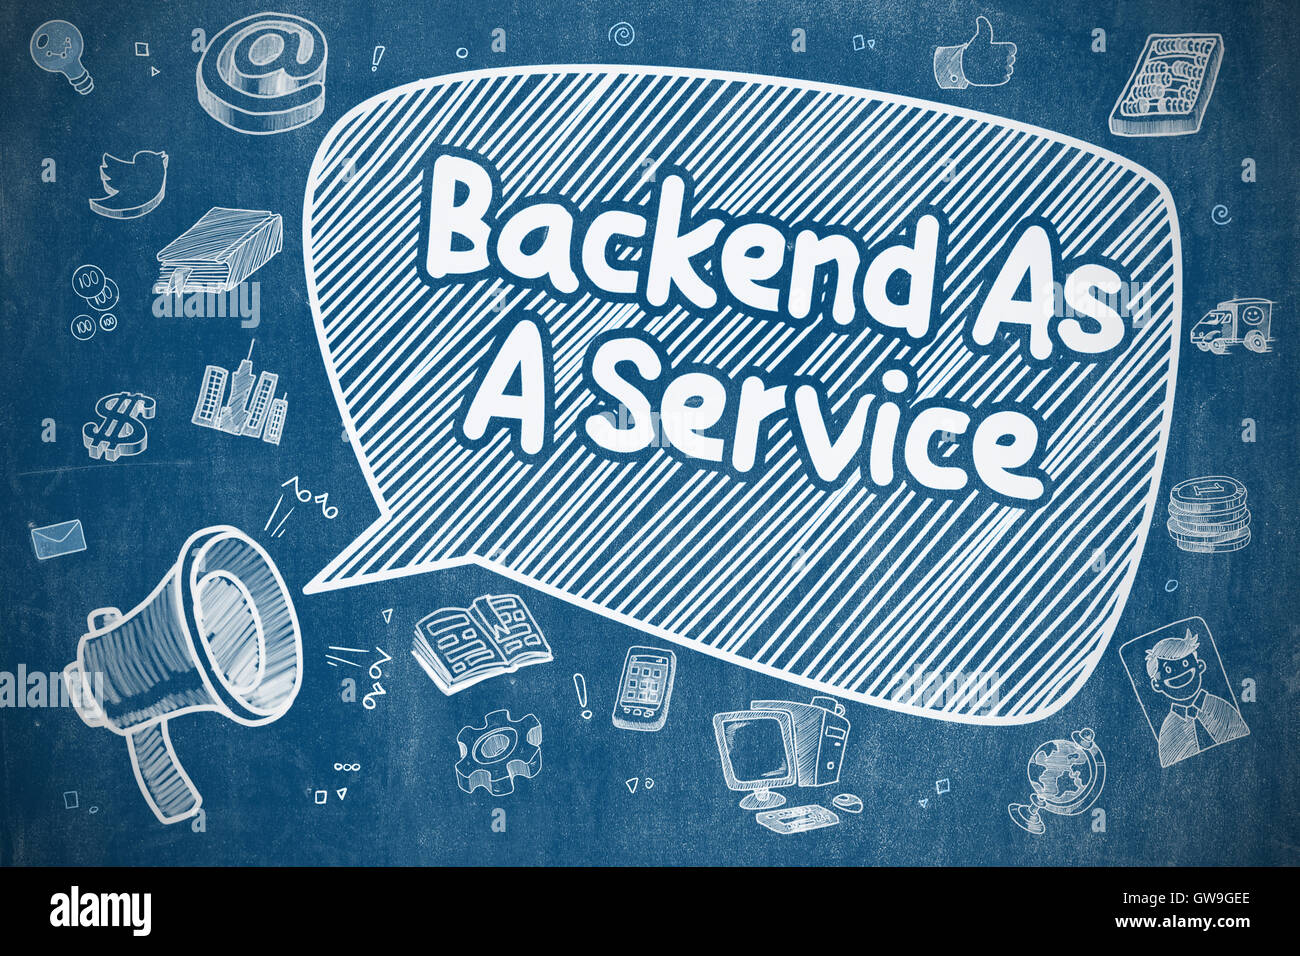 Backend come un servizio - Concetto di affari. Foto Stock